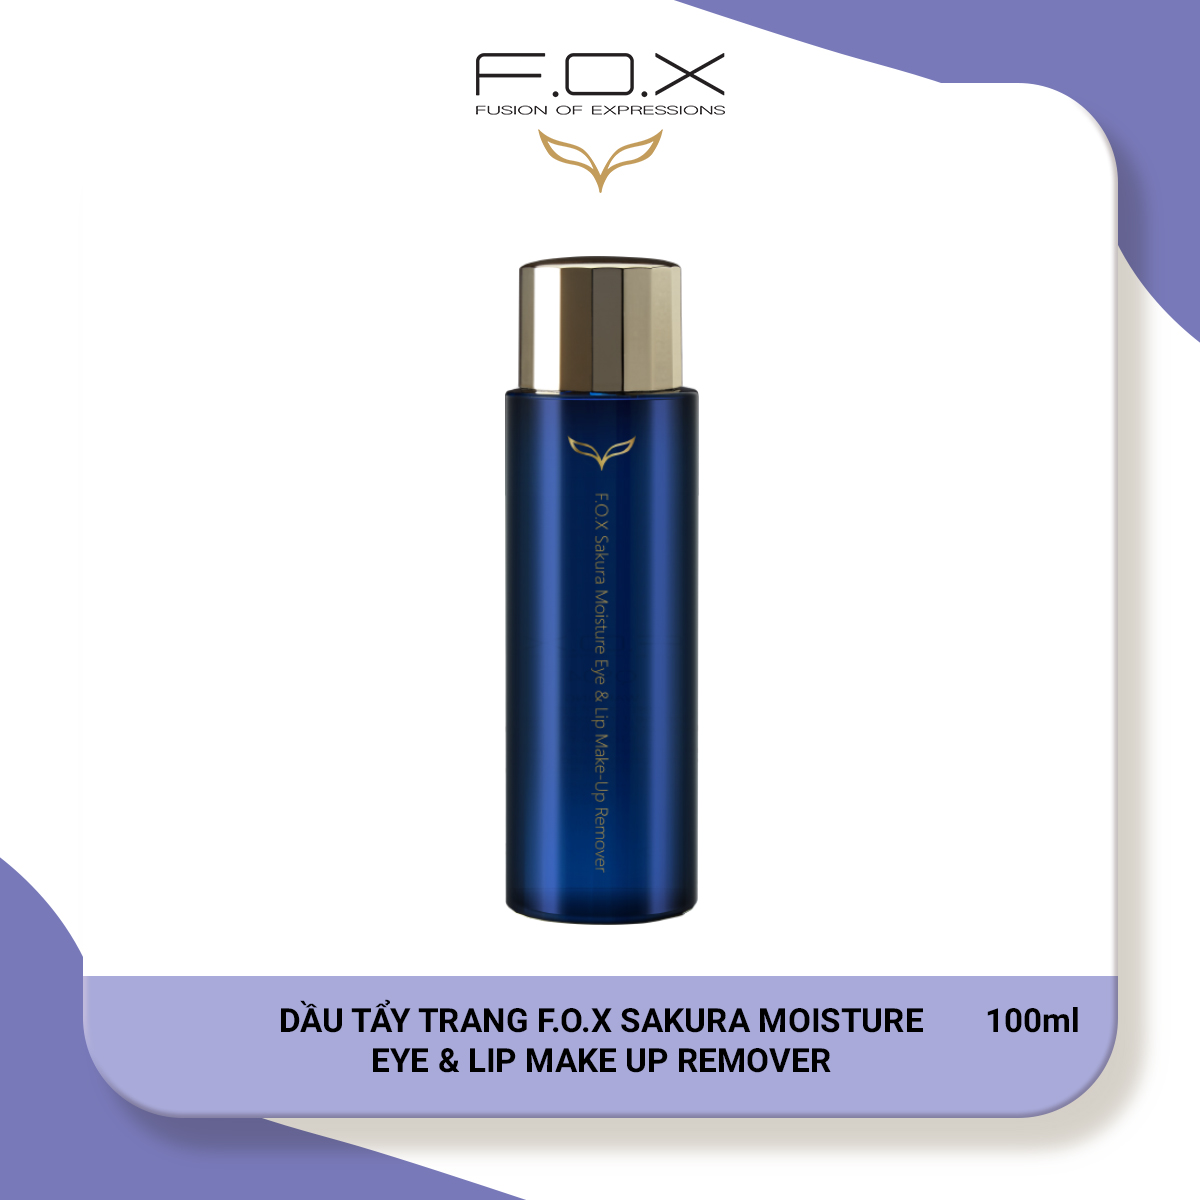 Dầu Tẩy Trang F.O.X Sakura Moisture Eye & Lip Make Up Remover 100ml - FOX Mỹ phẩm thiên nhiên thumbnail